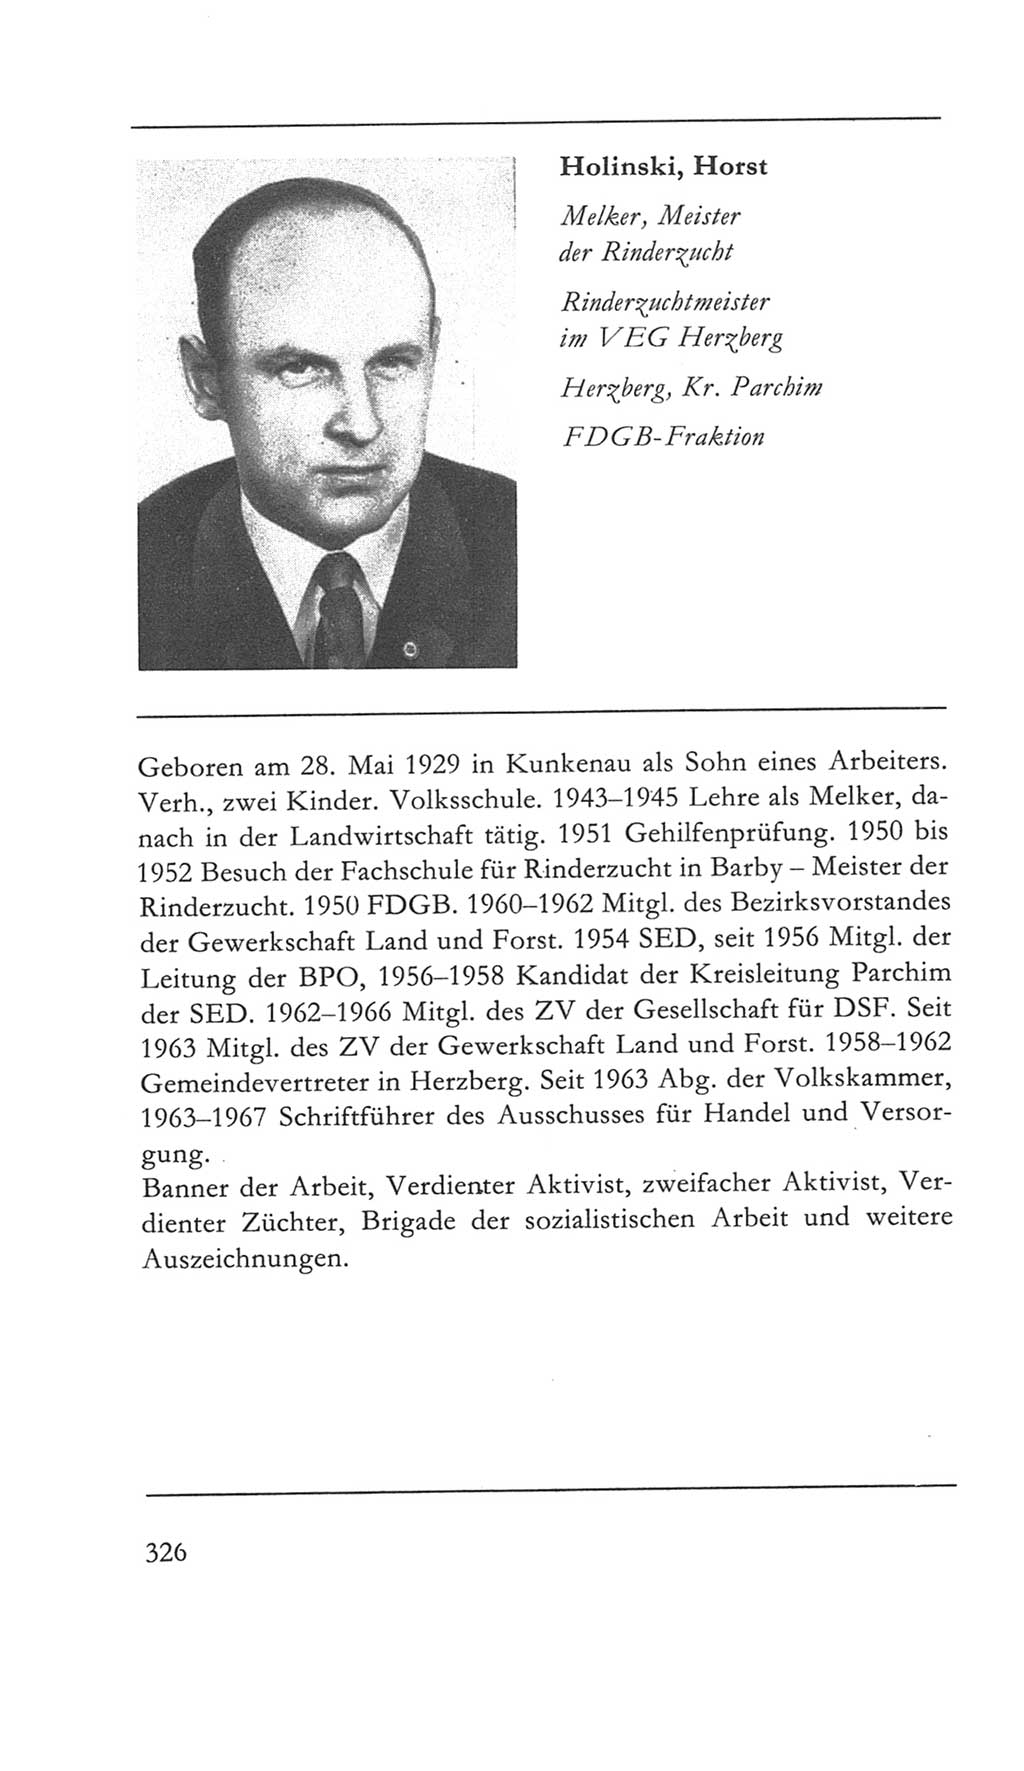 Volkskammer (VK) der Deutschen Demokratischen Republik (DDR) 5. Wahlperiode 1967-1971, Seite 326 (VK. DDR 5. WP. 1967-1971, S. 326)